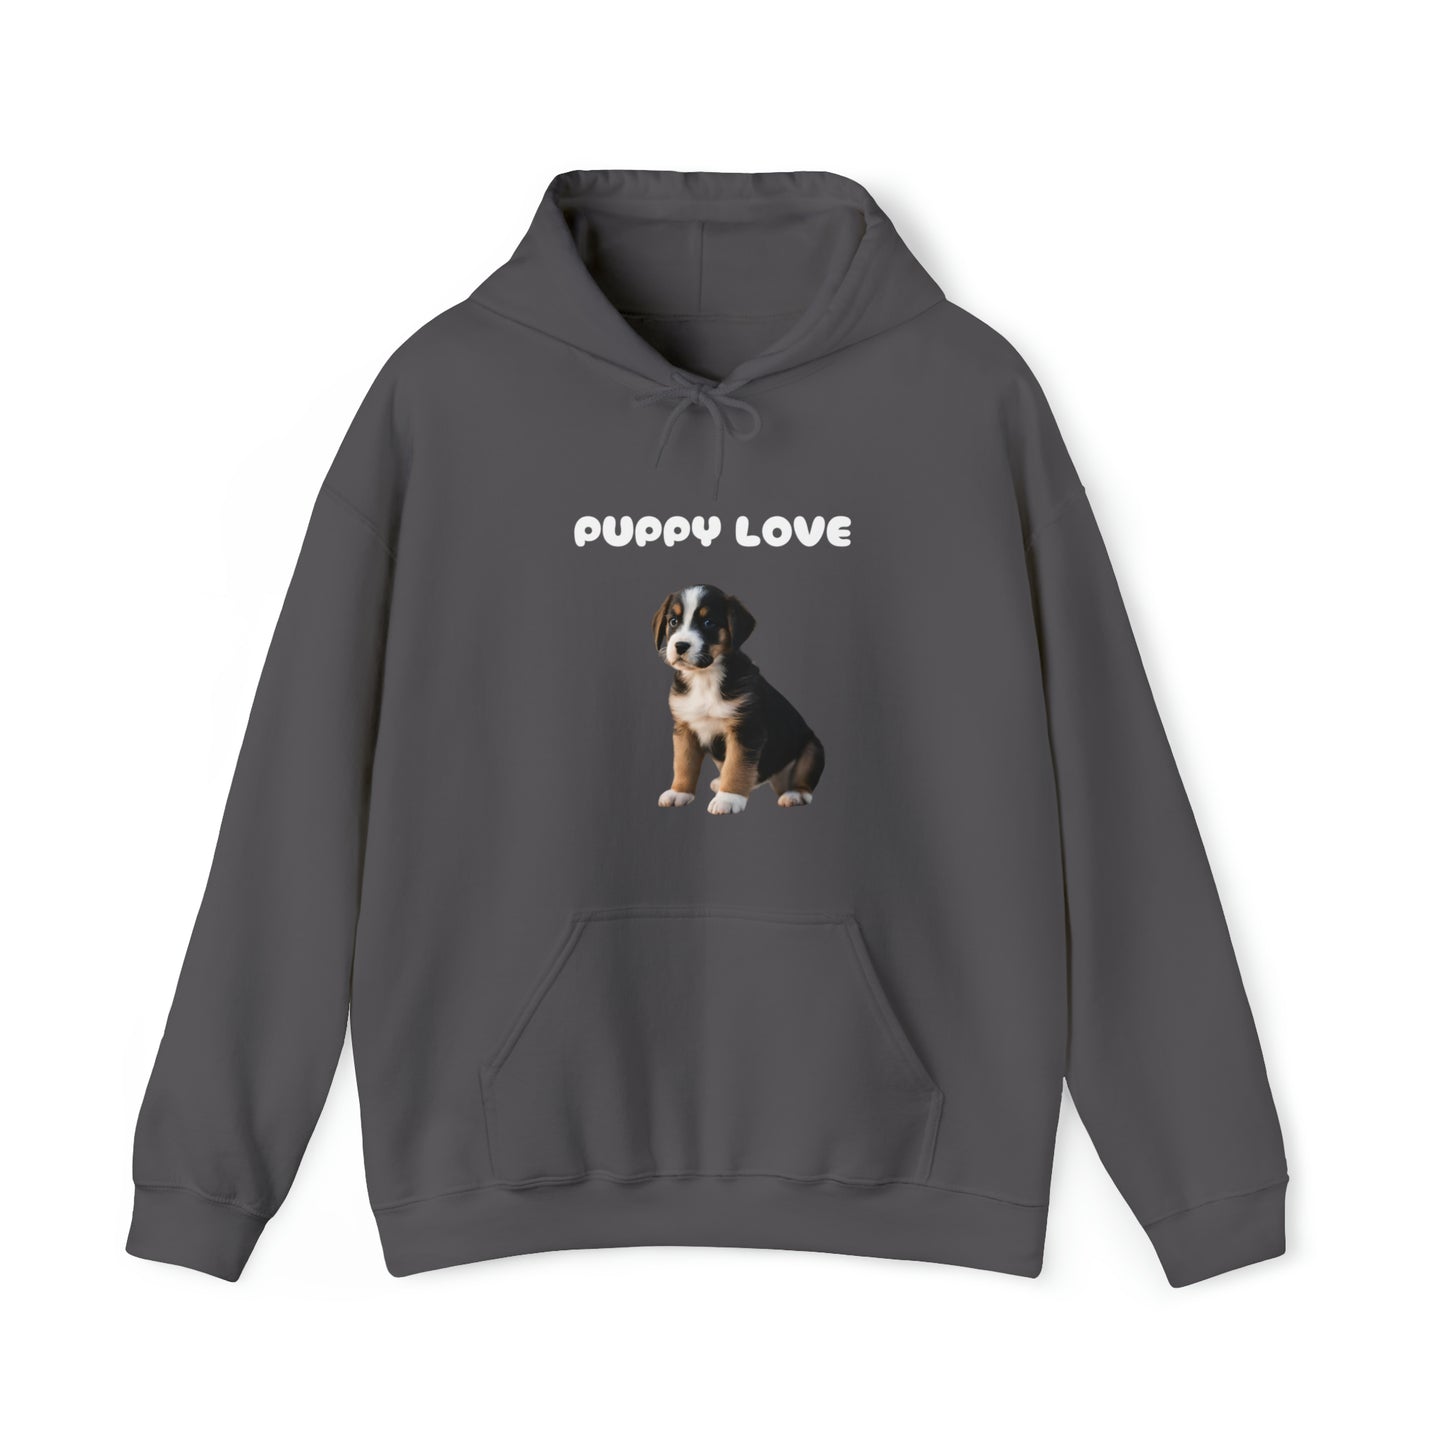 Dog Lover unisex Hooded sweatshirt gift